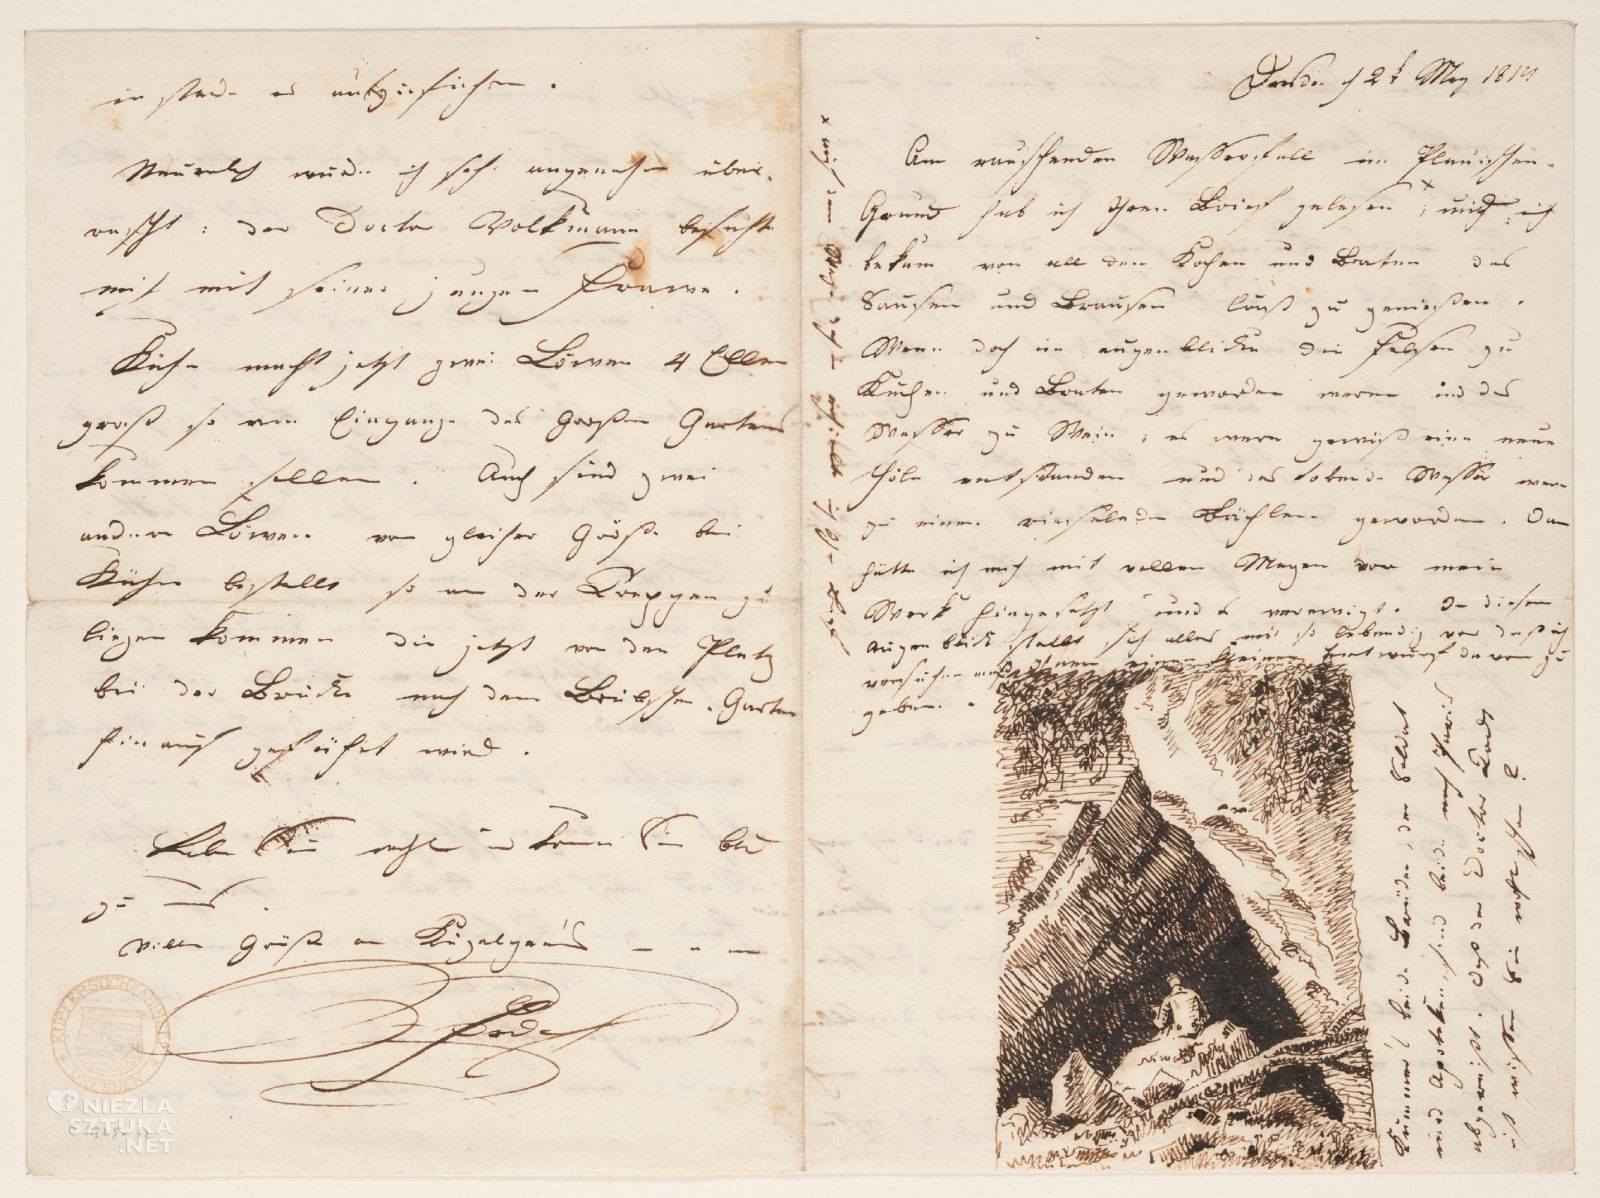 Caspar David Friedrich, List do Louise Seidler, Autoportret widziany od tyłu, szkic, dokument, korespondencja, papier, pod listem, sztuka niemiecka, niezła sztuka